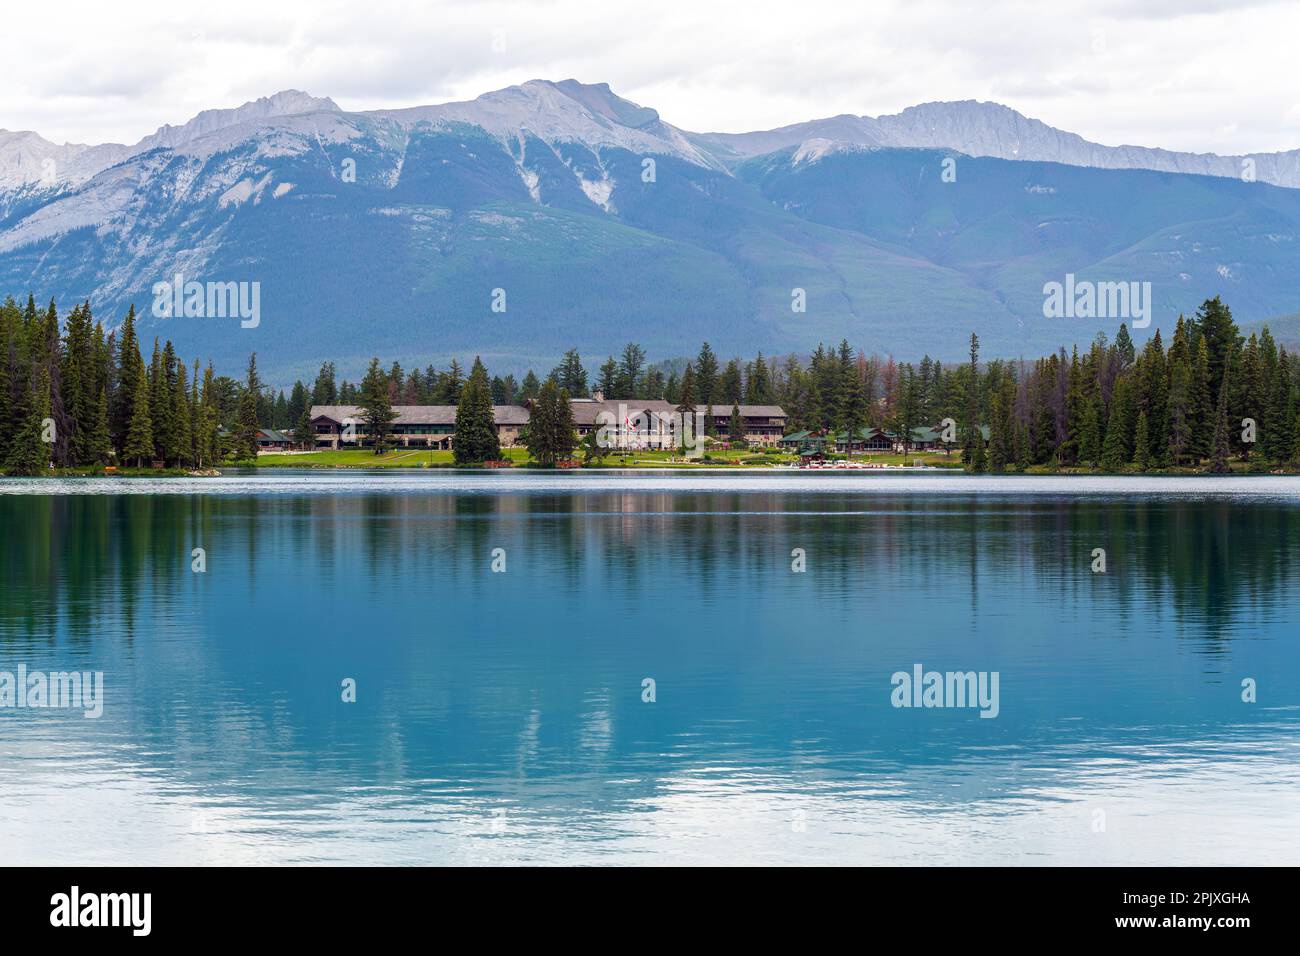 Lac Beauvert dans les Rocheuses canadiennes, parc national Jasper, Canada. Banque D'Images